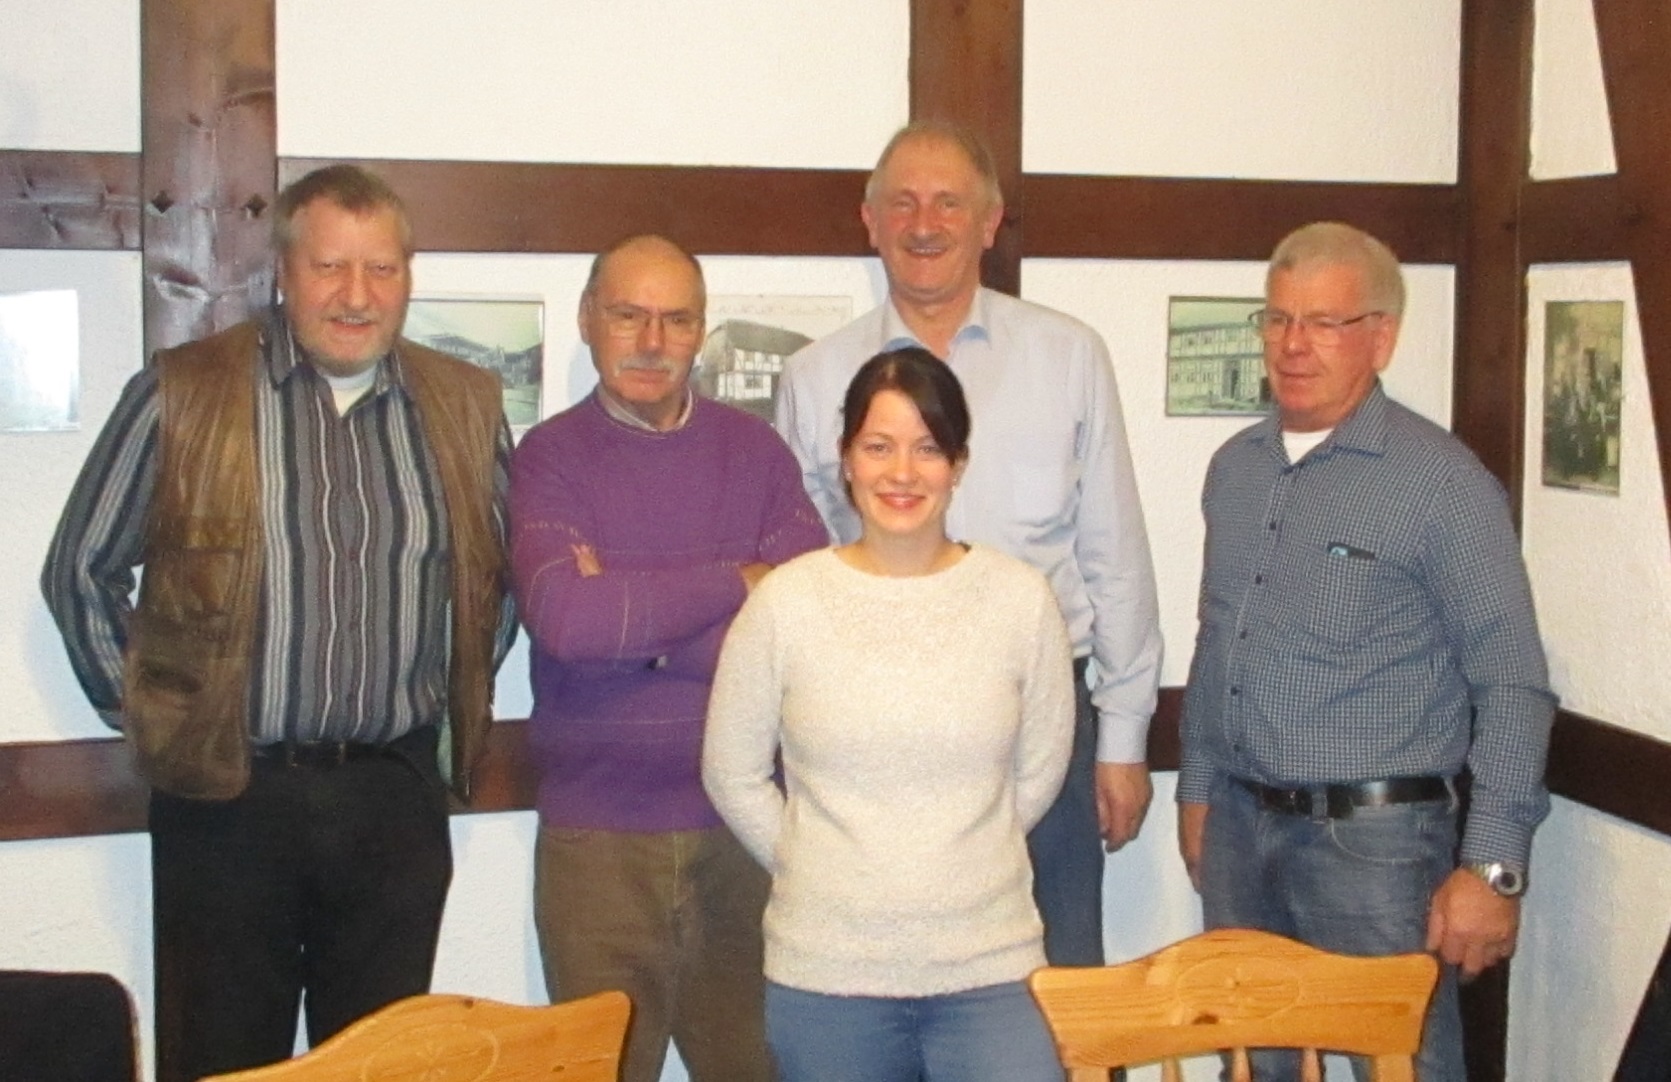 Von links nach rechts: Otto Heinemeyer, Klaus-Peter Platz, Joachim Stnkel, Manfred Rose und vorne Anna-Lena Lampe